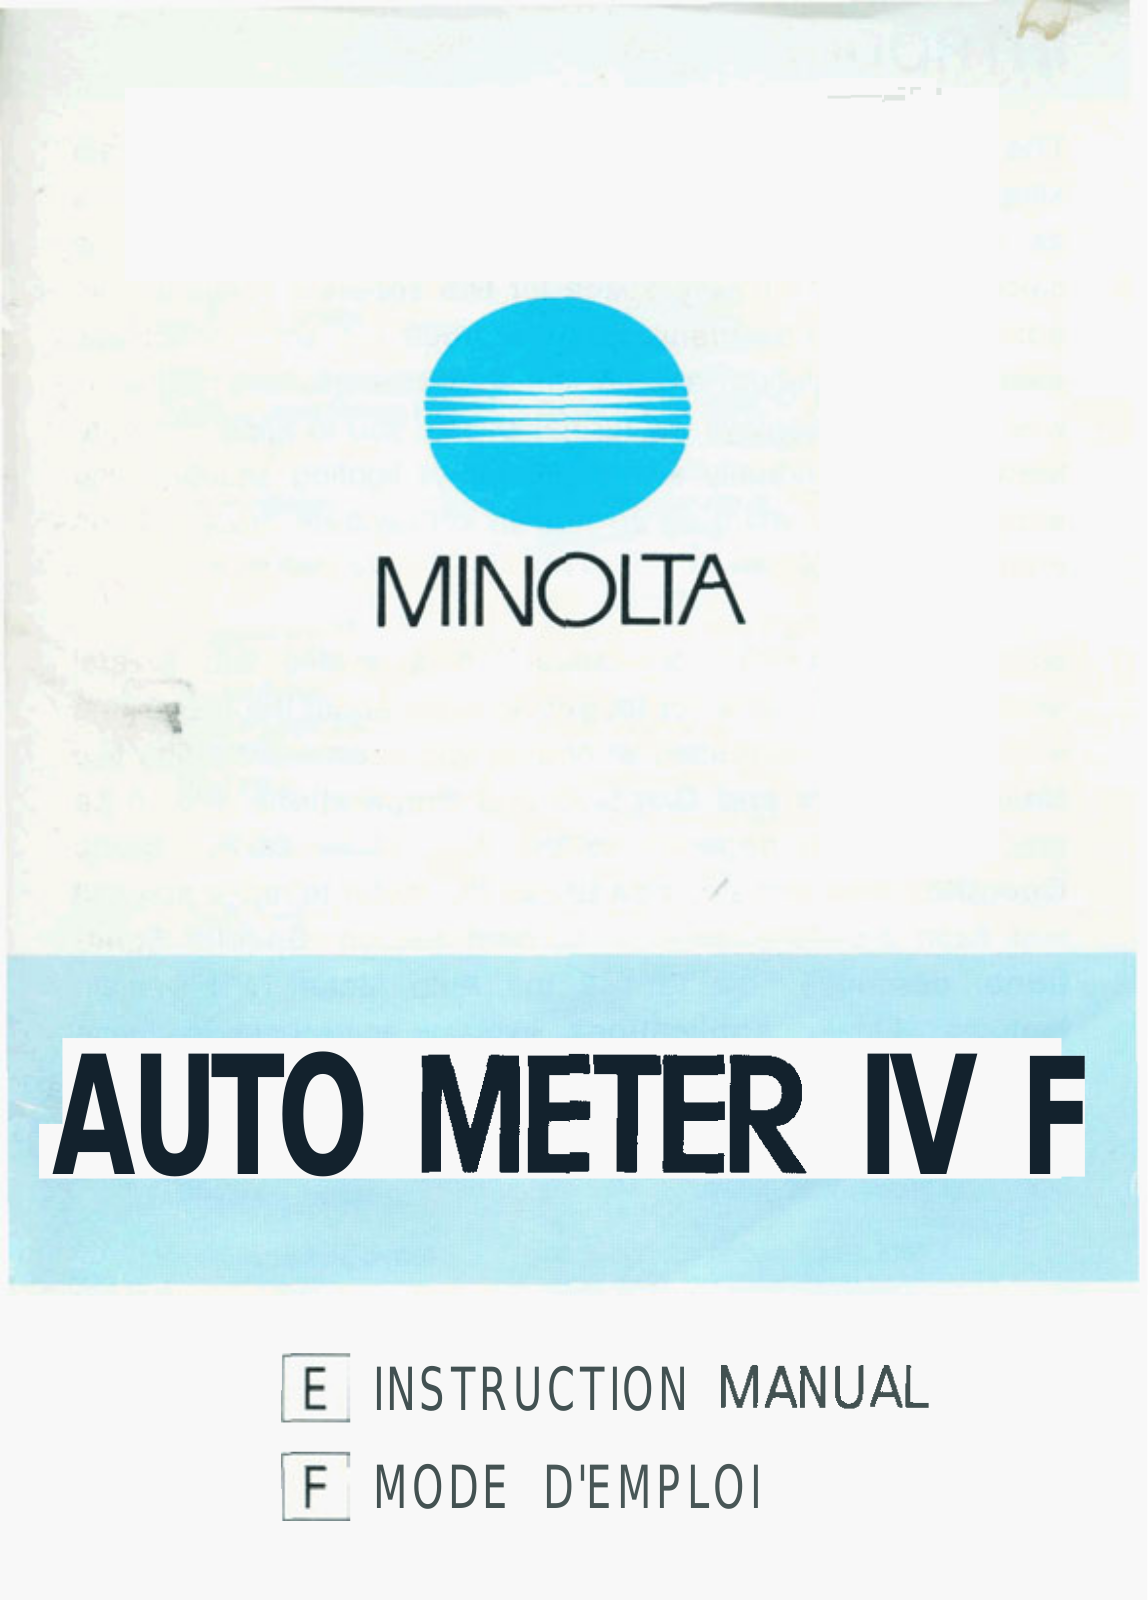 Minolta AUTO METER IV F User Manual